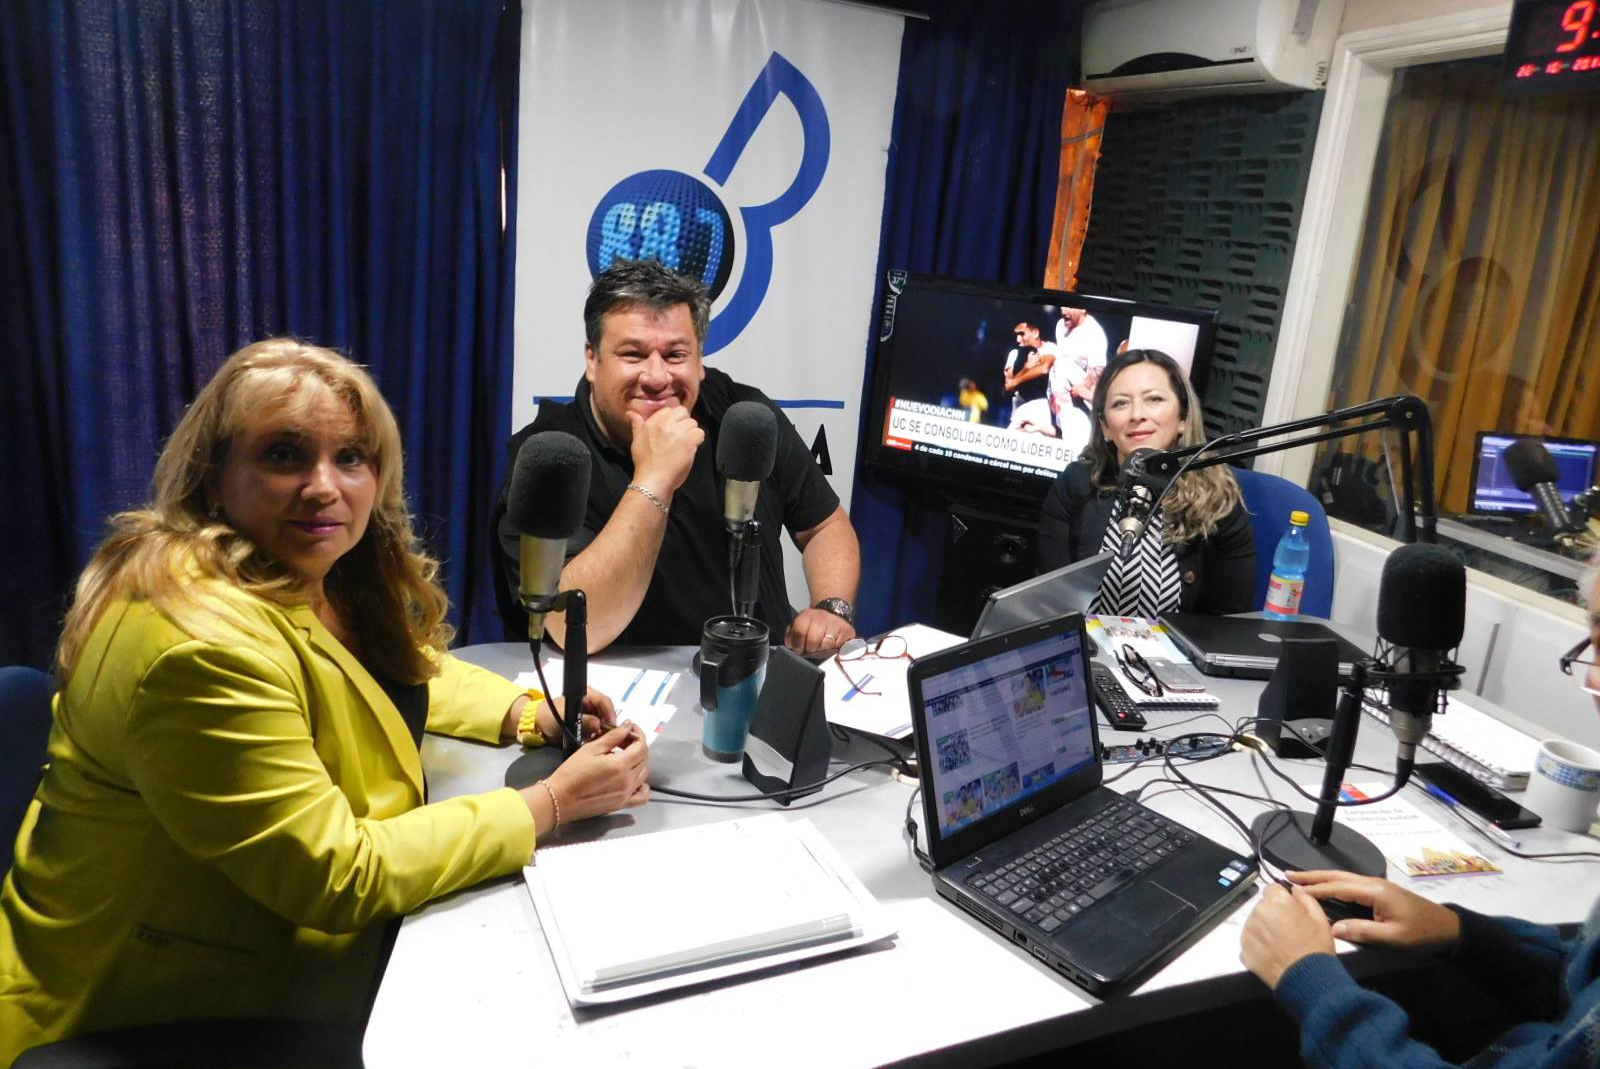 En Iquique difunden campaña “Conoce los derechos de Familia” en Radio Bravissima FM